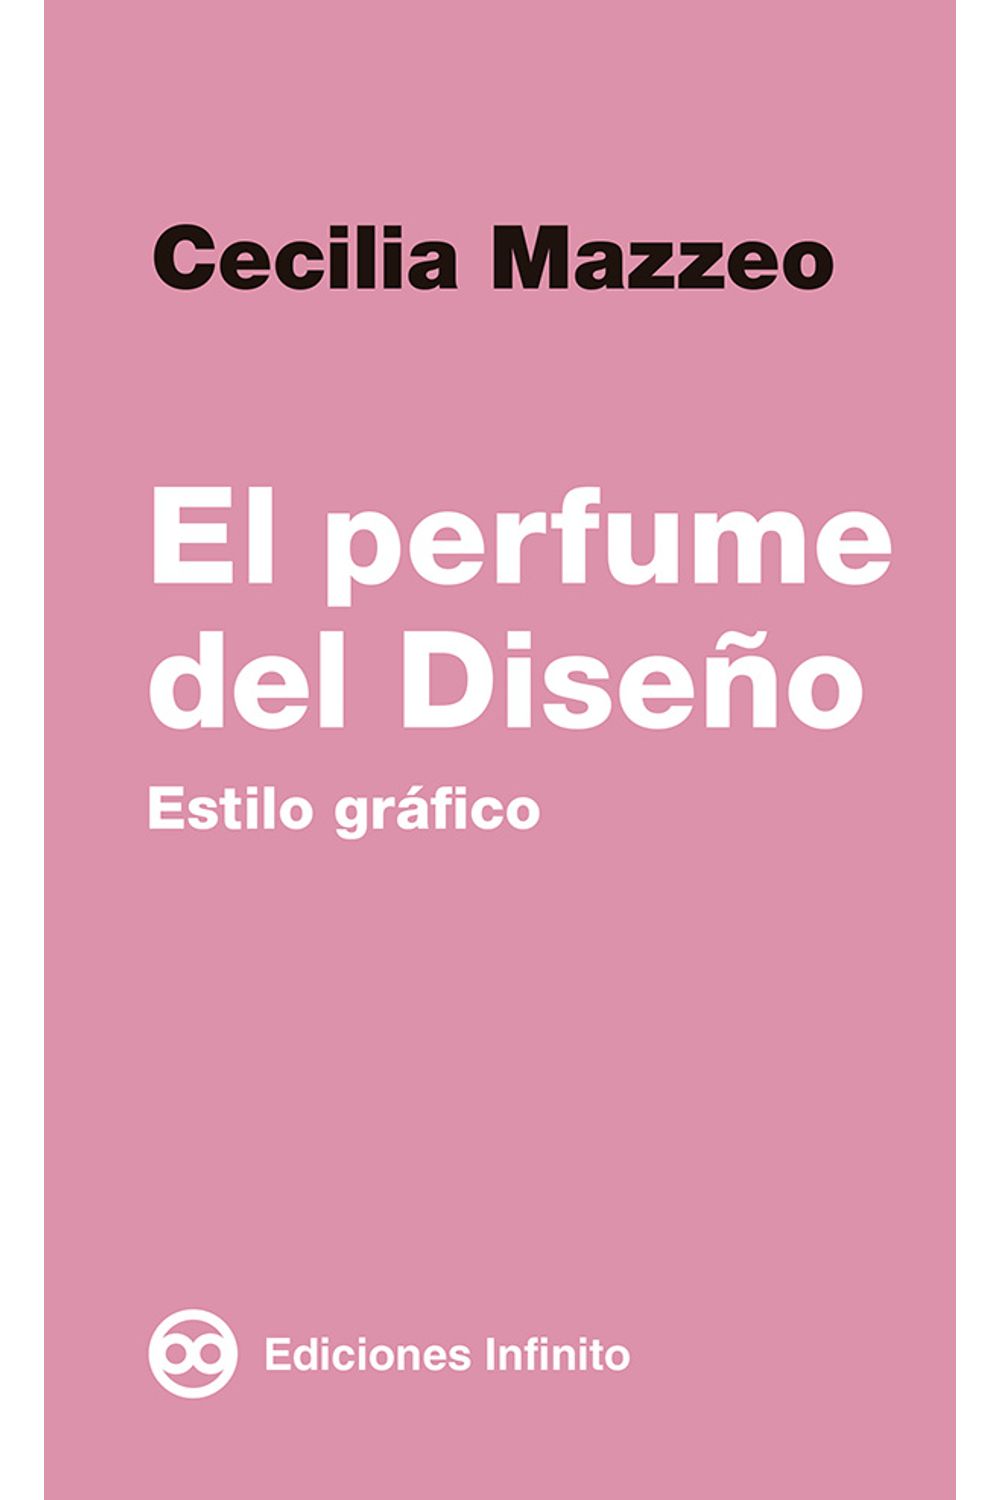 bm-el-perfume-del-diseno-ediciones-infinito-srl-9789873970221